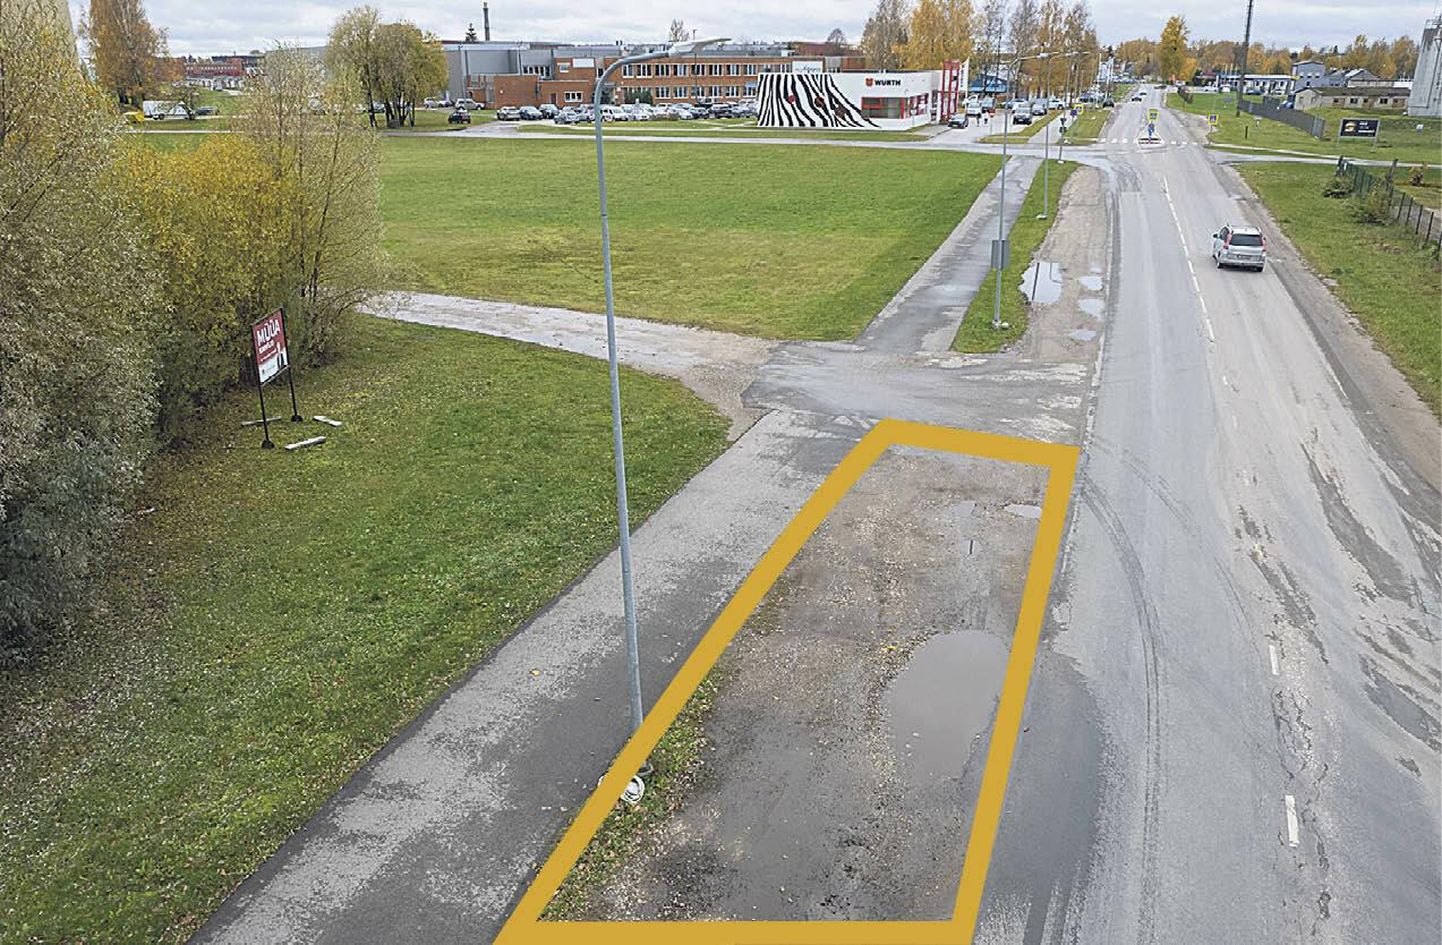 Fotol kollasega piiratud alal parkinud autode omanikud said 24. augustil teada, et see kruusane plats on linna haljasala, kus autod seista ei tohi.